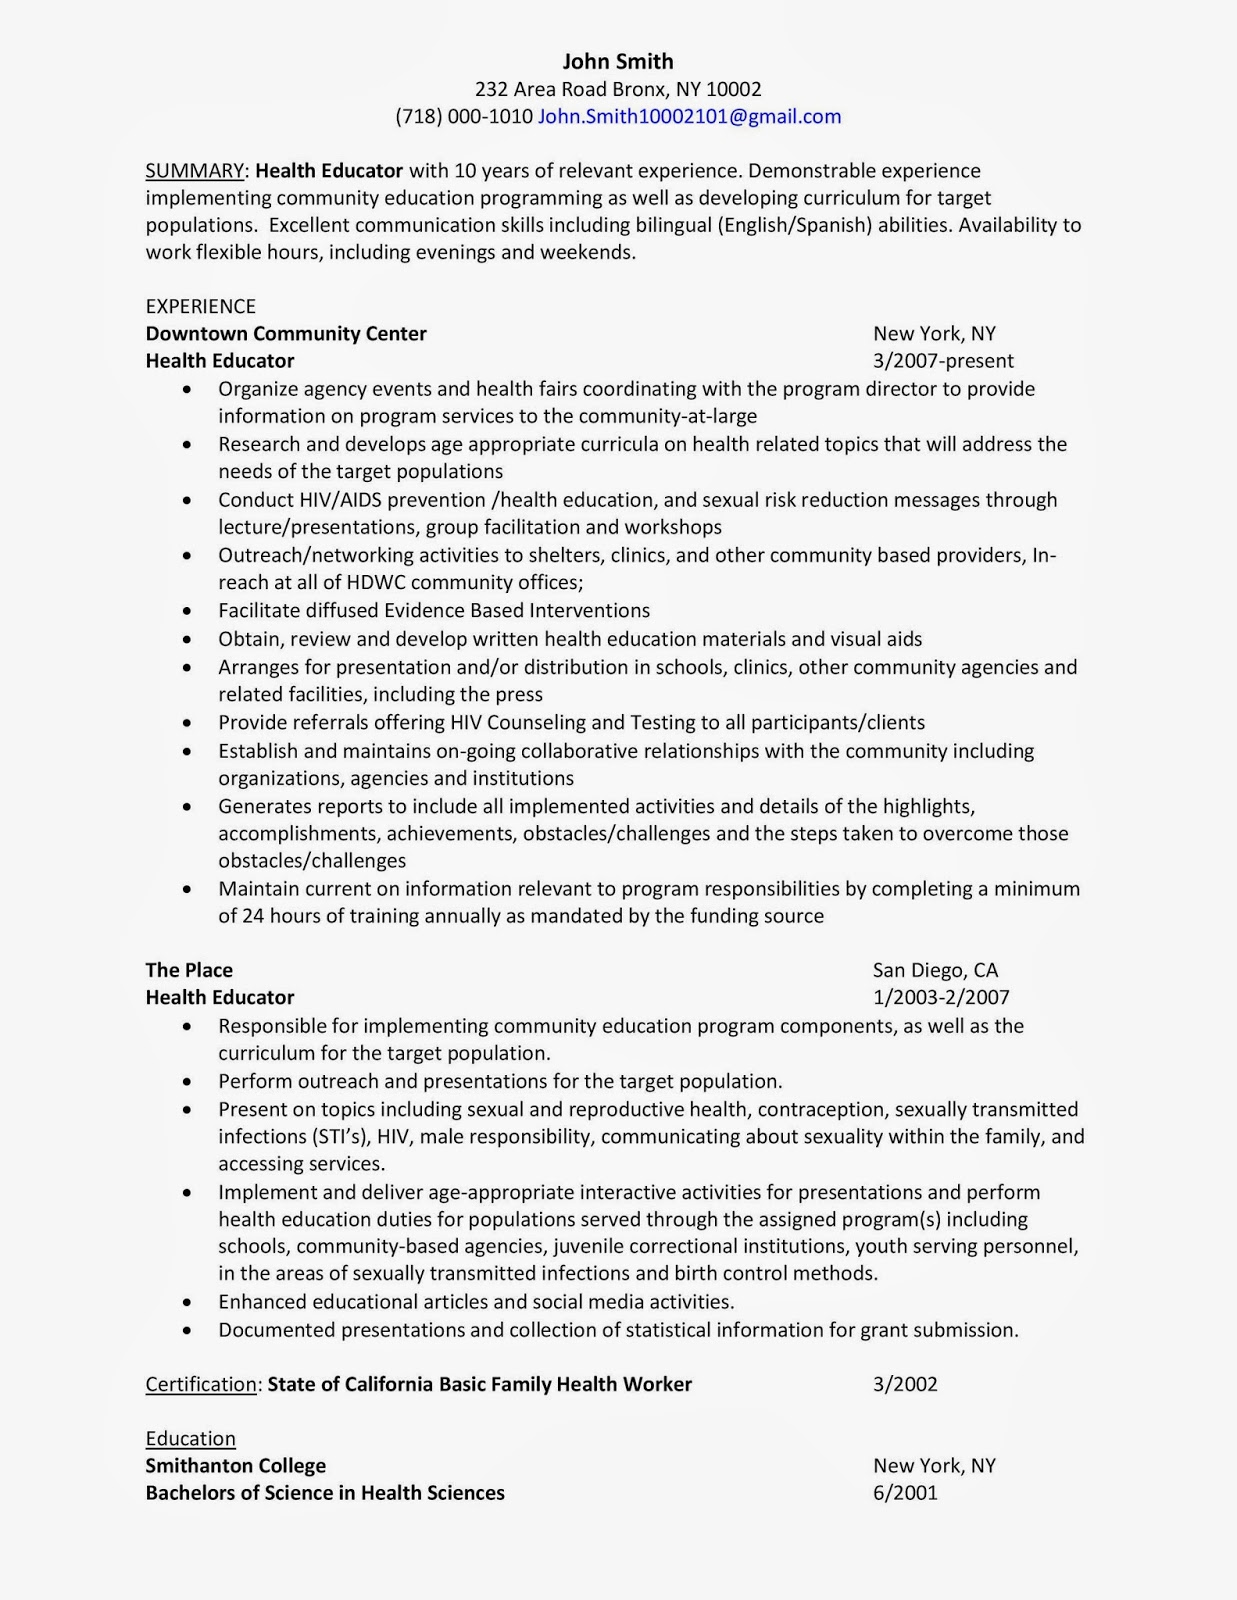 Health screener resume